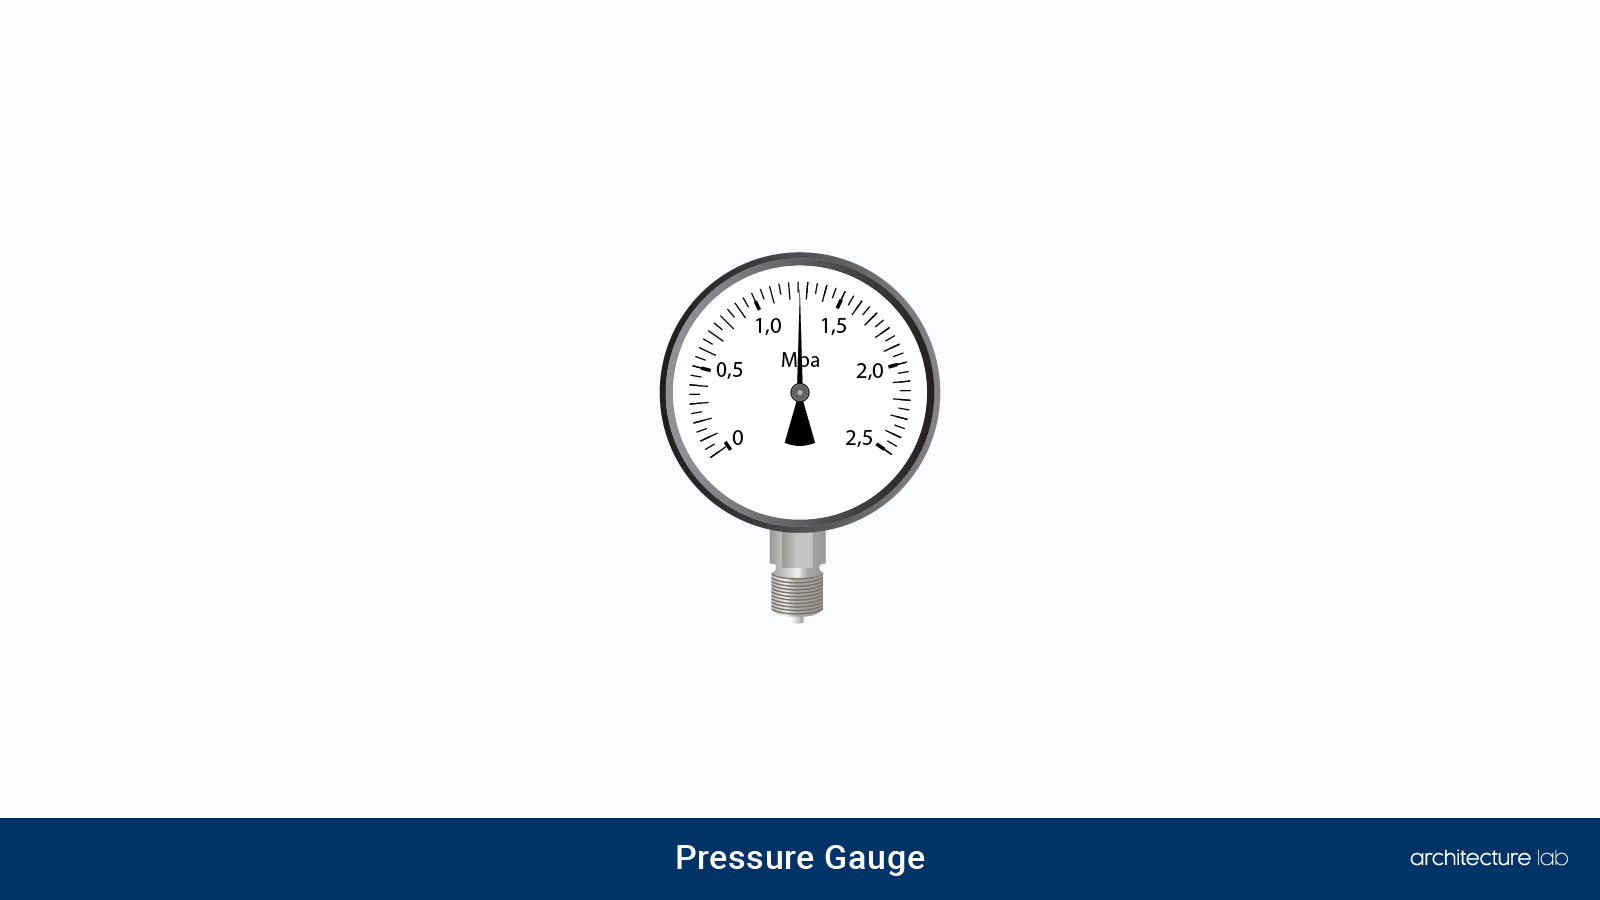 4. Pressure gauge